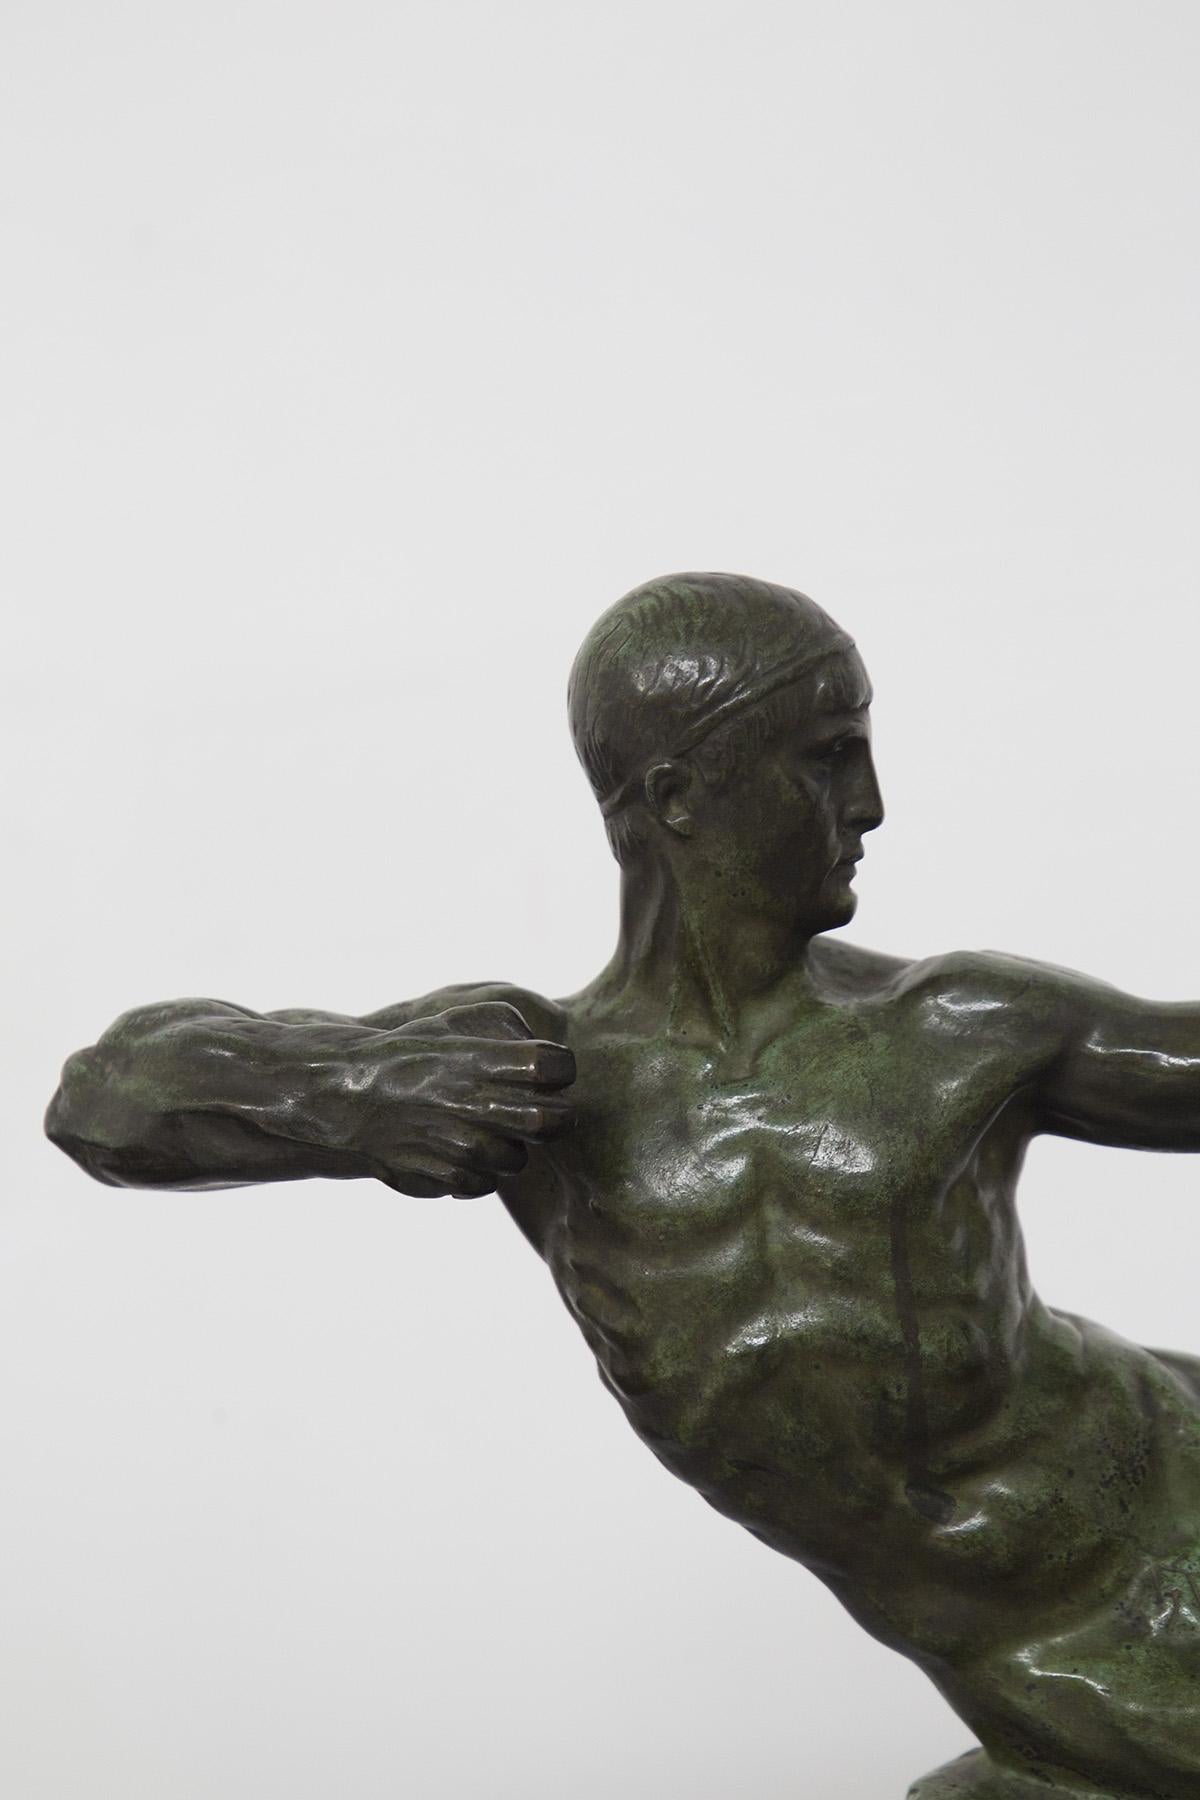 Magnifique sculpture en bronze Art déco conçue par le célèbre artiste français Victor Demanet en 1925, représentant un archer masculin nu. Bronze de qualité supérieure avec une belle patine vert bronze. SIGNÉ ET MARQUÉ.
Le sculpteur belge Victor